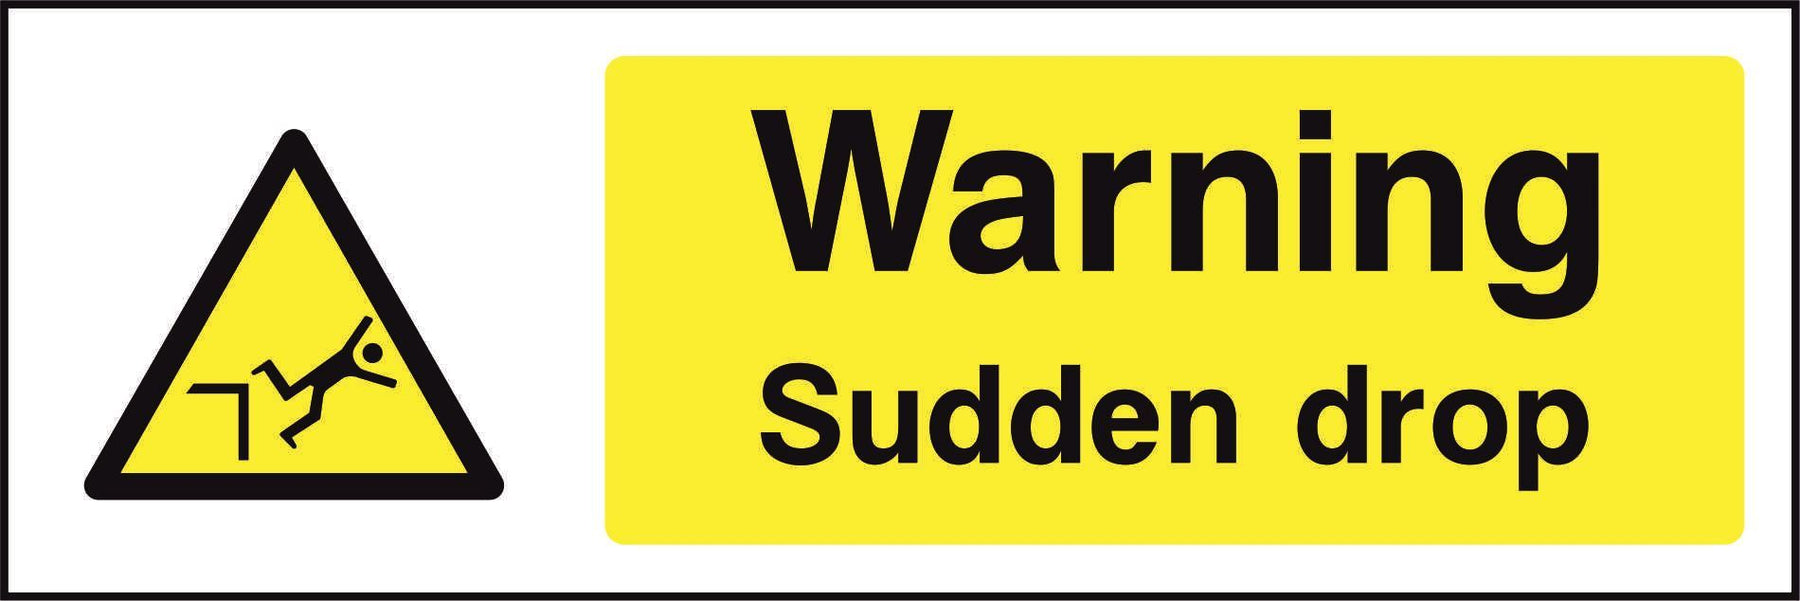 Warning Sudden drop